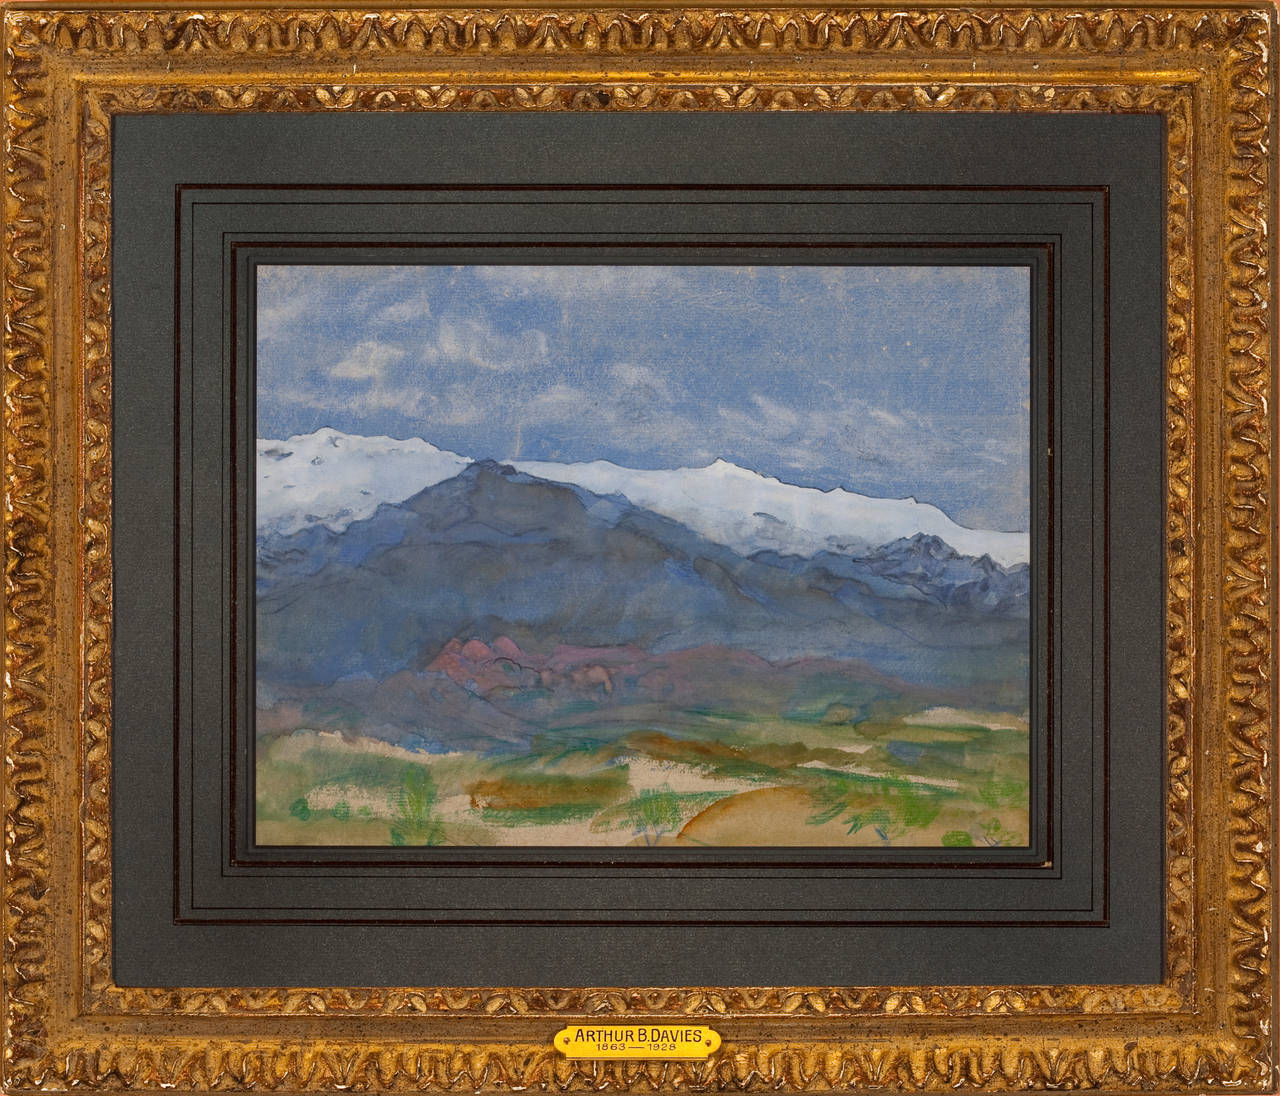 Arthur B. Davies Landscape Art - "Mountain Landscape"